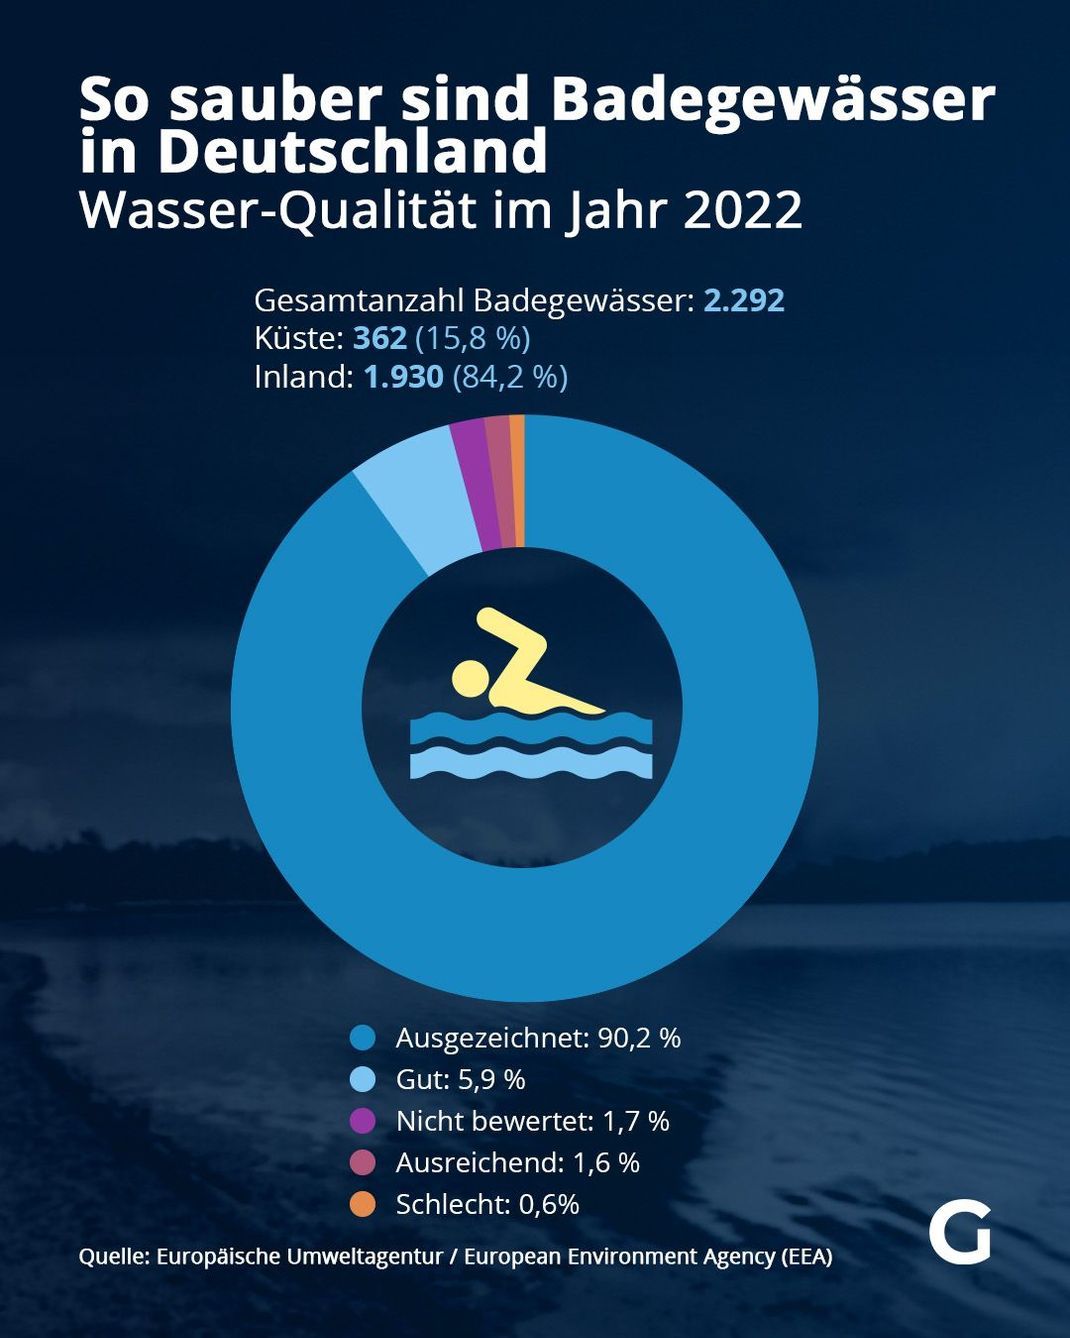 So sauber sind Badegewässer in Deutschland - Wasser-Qualität im Jahr 2022